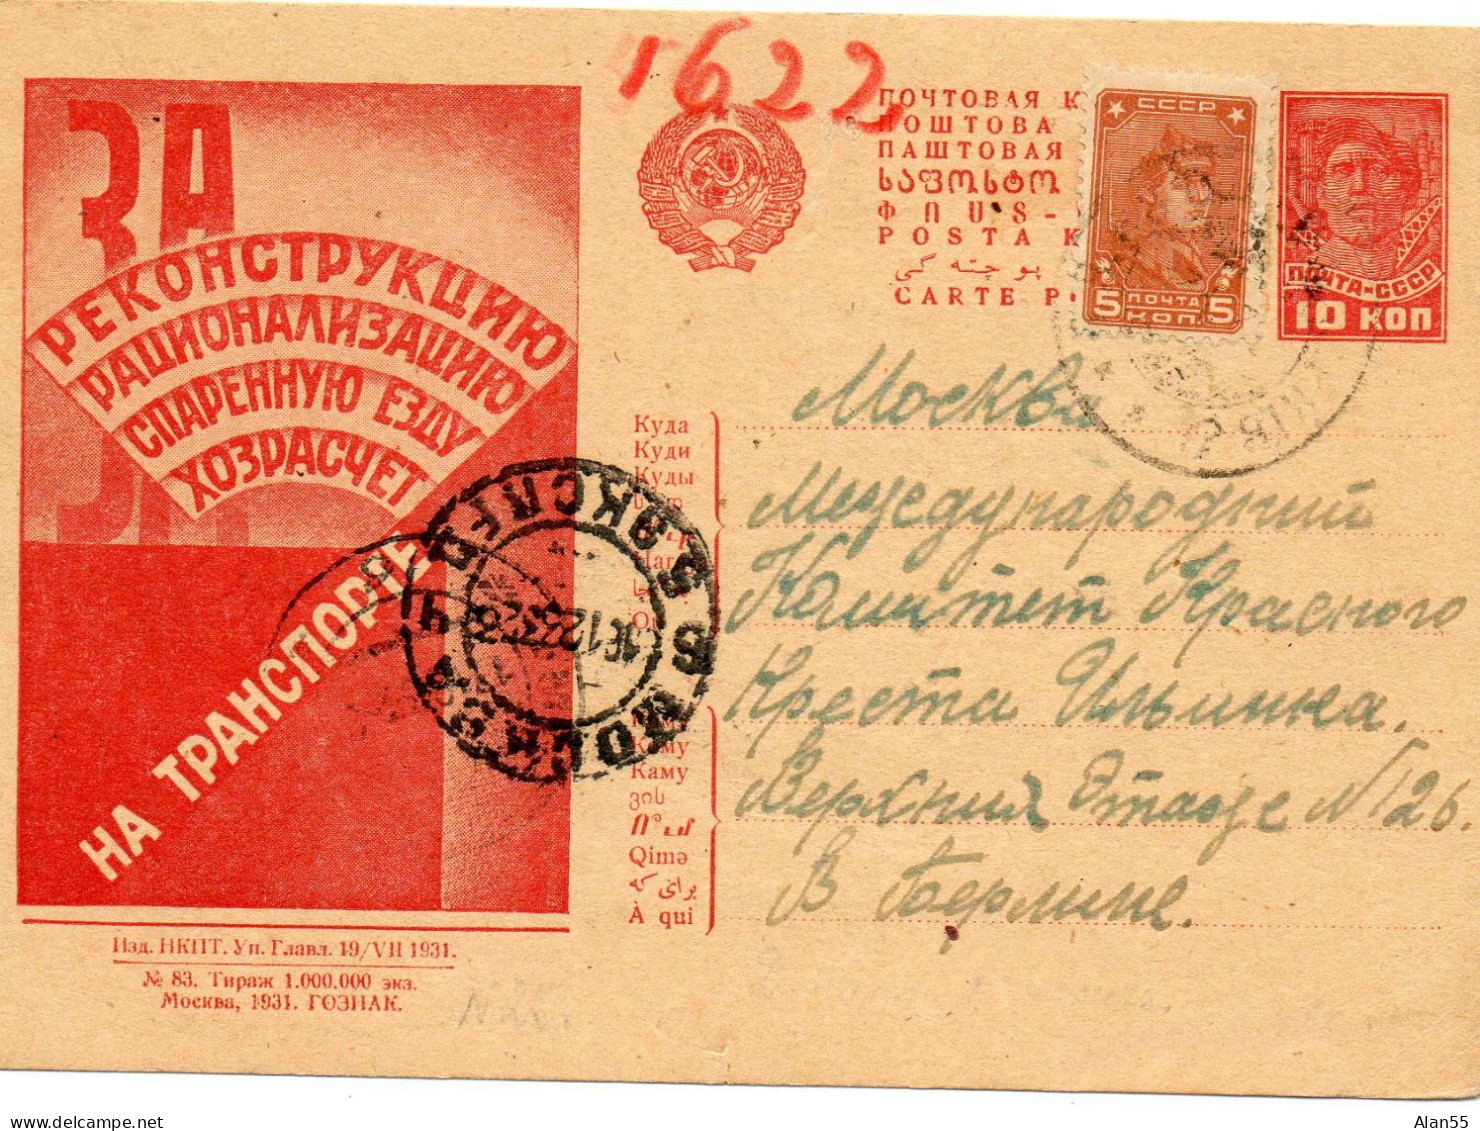 URSS. 1933. ENTIER POSTAL N°83."AMELIORATION DES TRANSPORTS". (DEMANDE DE SECOURS) - Covers & Documents